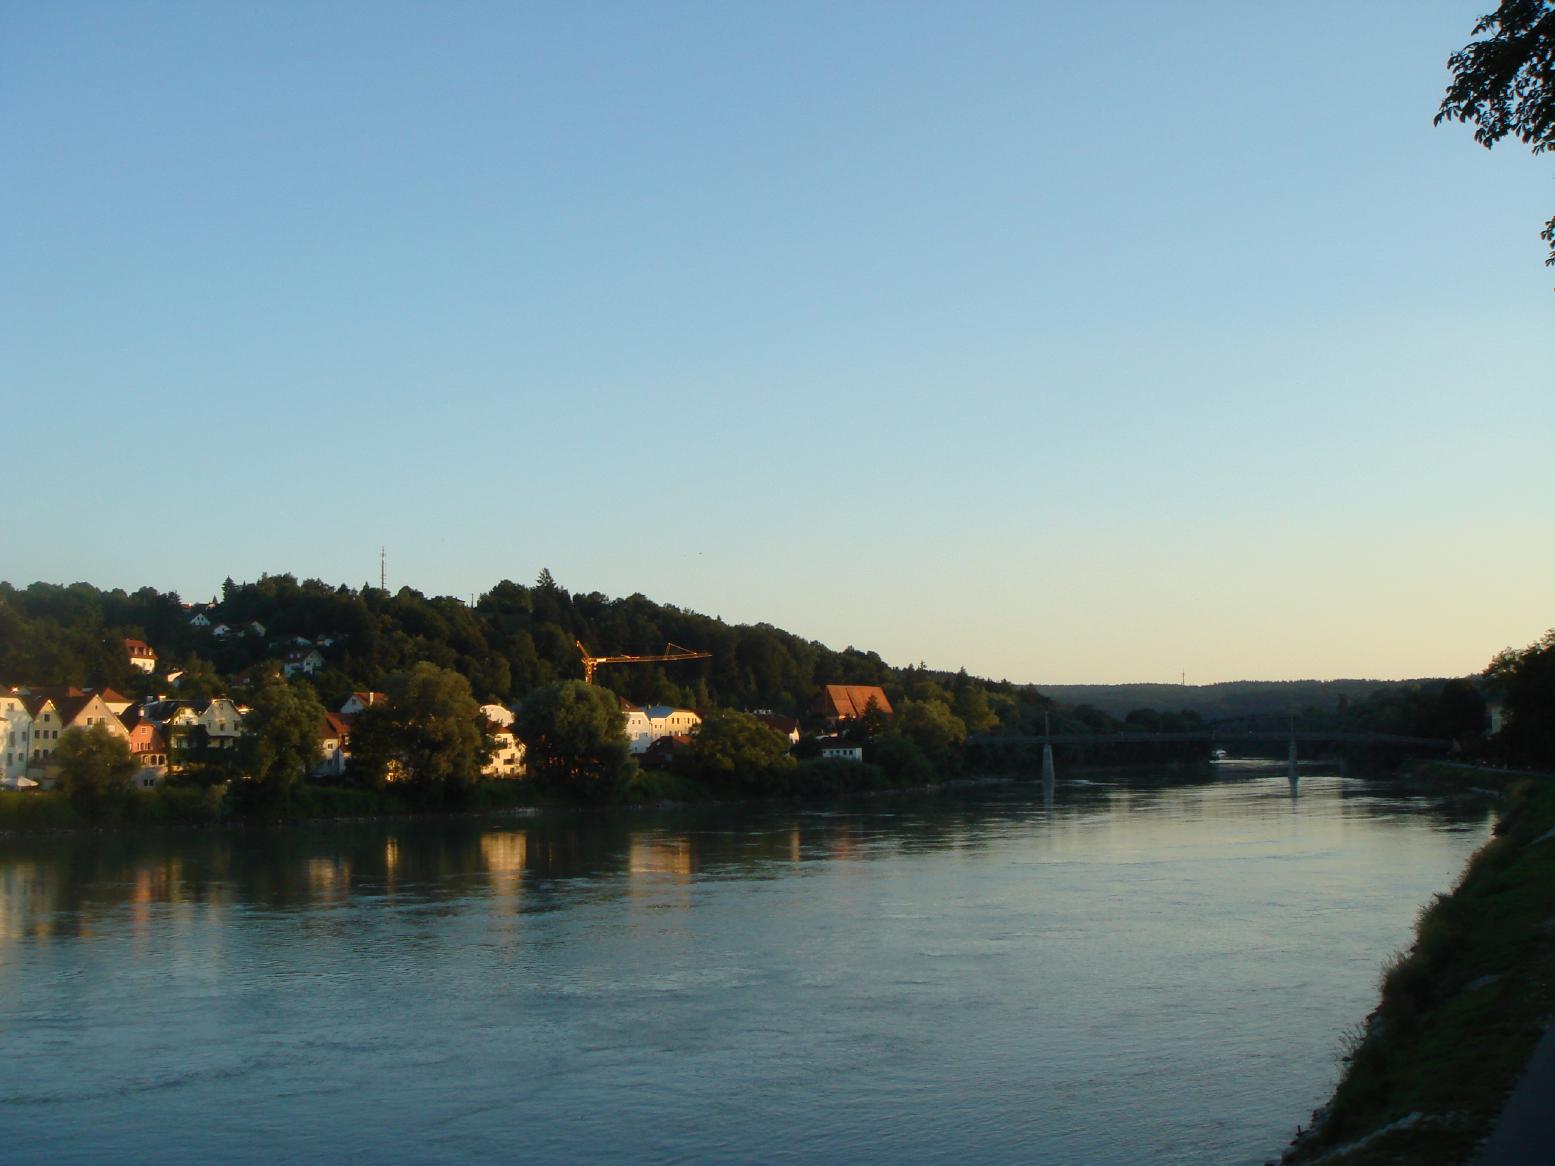 イン川。遠くの鉄橋を、右から左に渡ればドイツからオーストリアの国境を越えることになります。